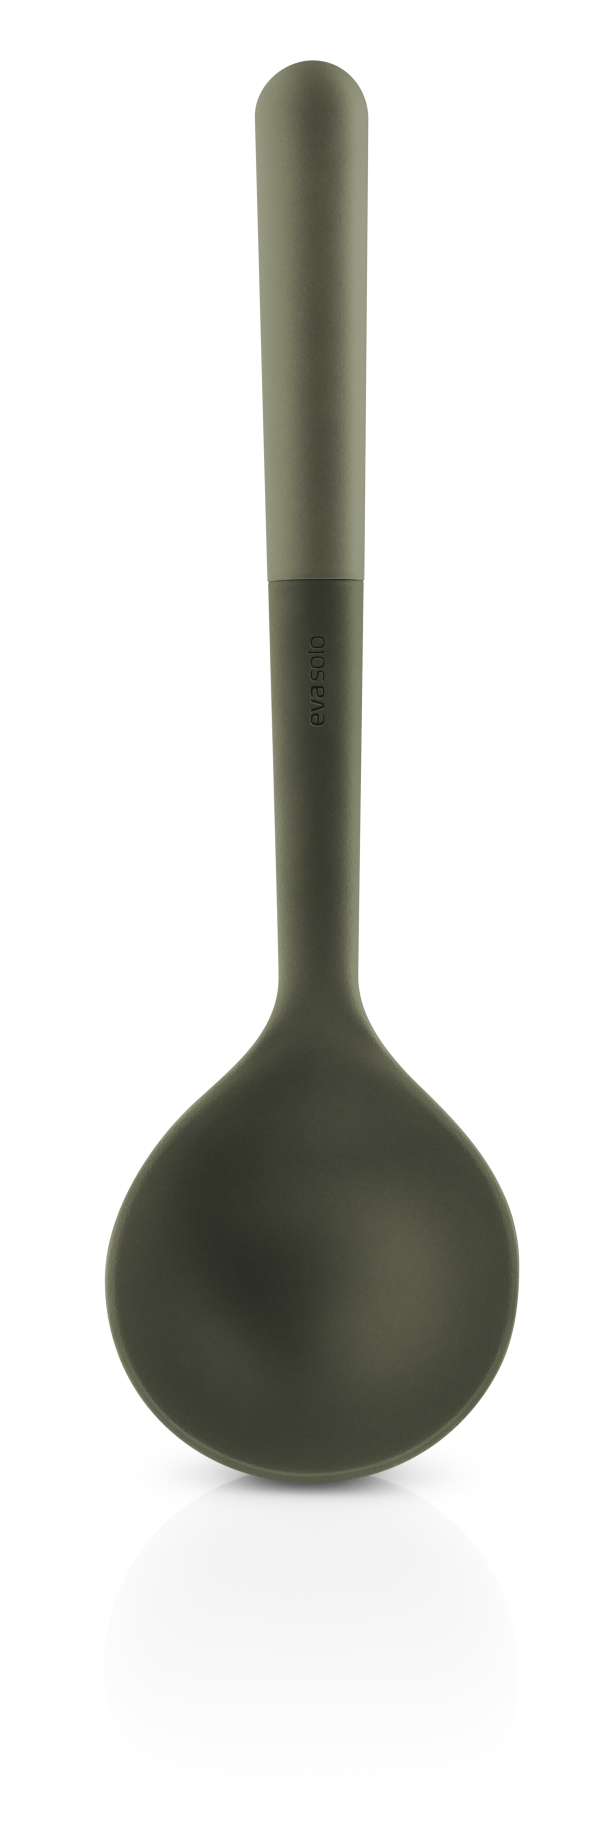 EVA SOLO 30 cm - chochla / łyżka wazowa silikonowa